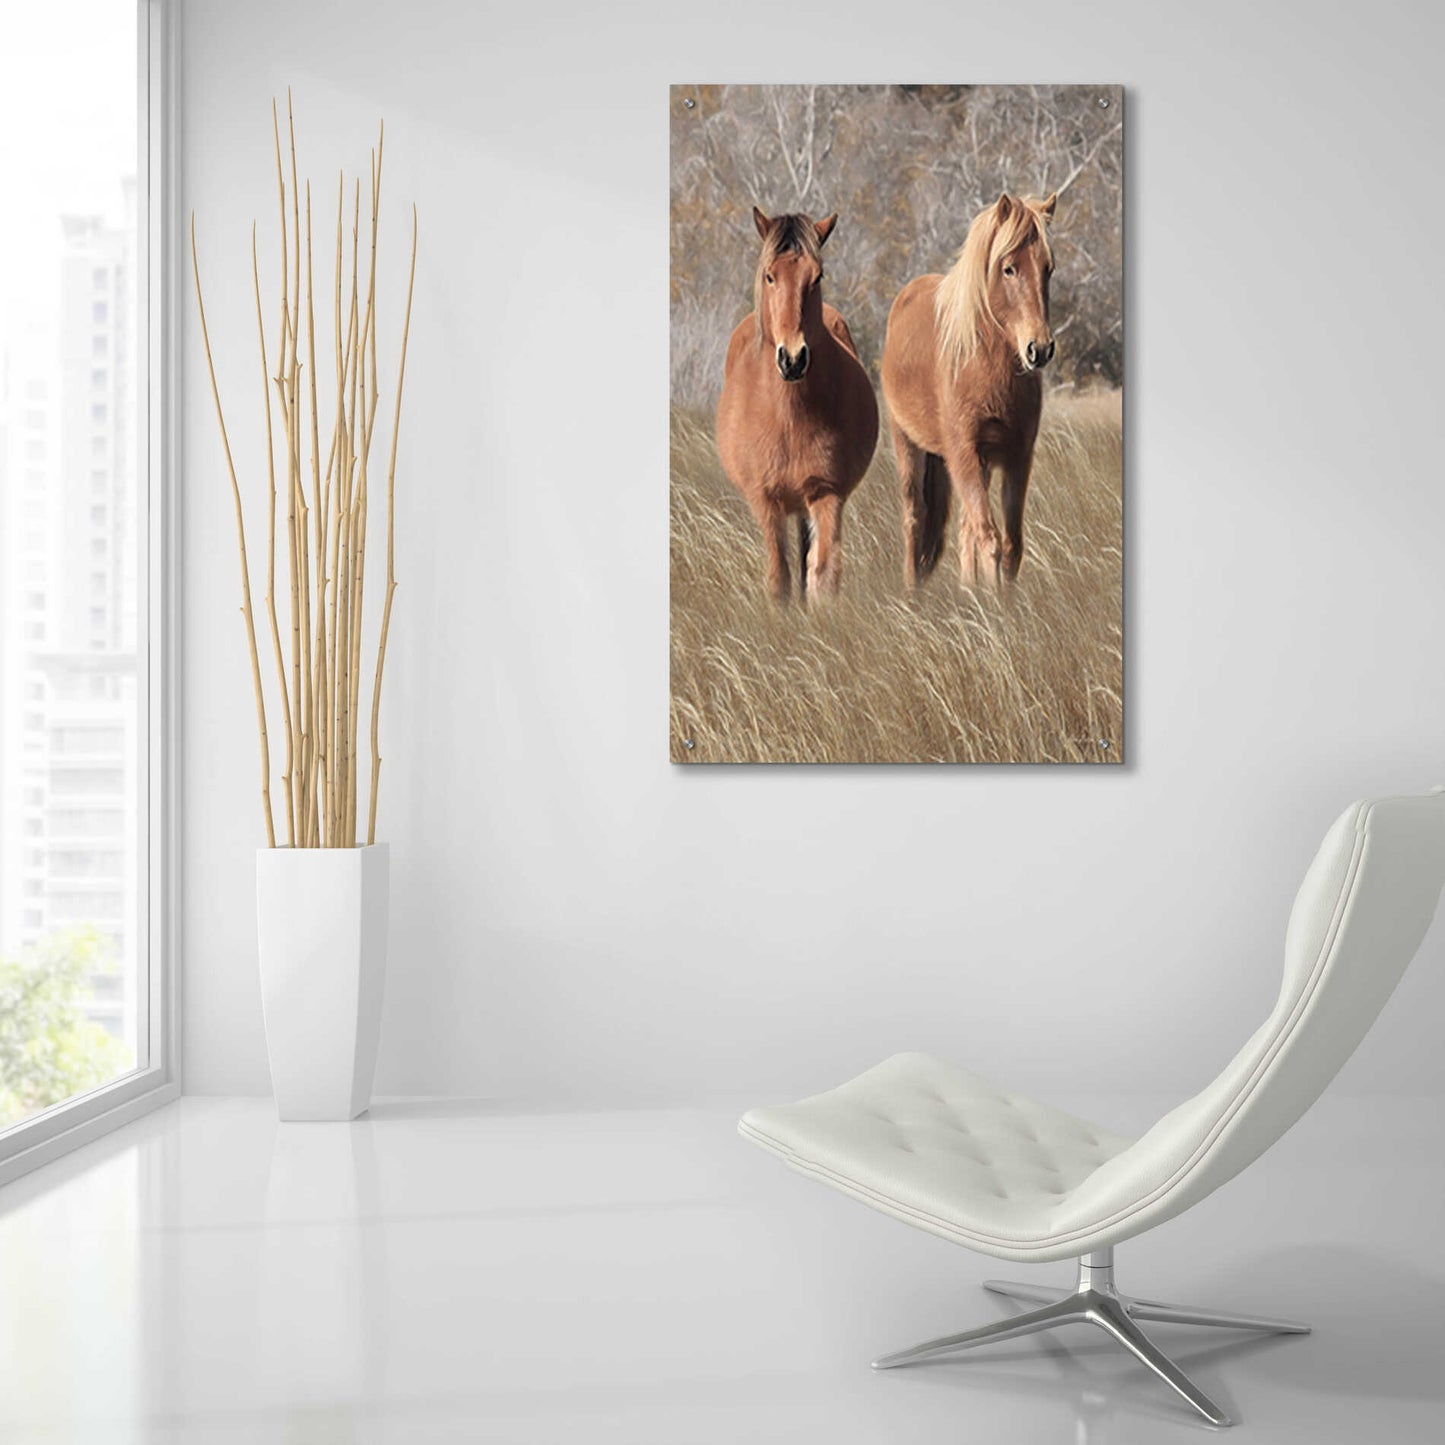 Epic Art 'Assateague Horses IV' by Lori Deiter, Acrylic Glass Wall Art,24x36